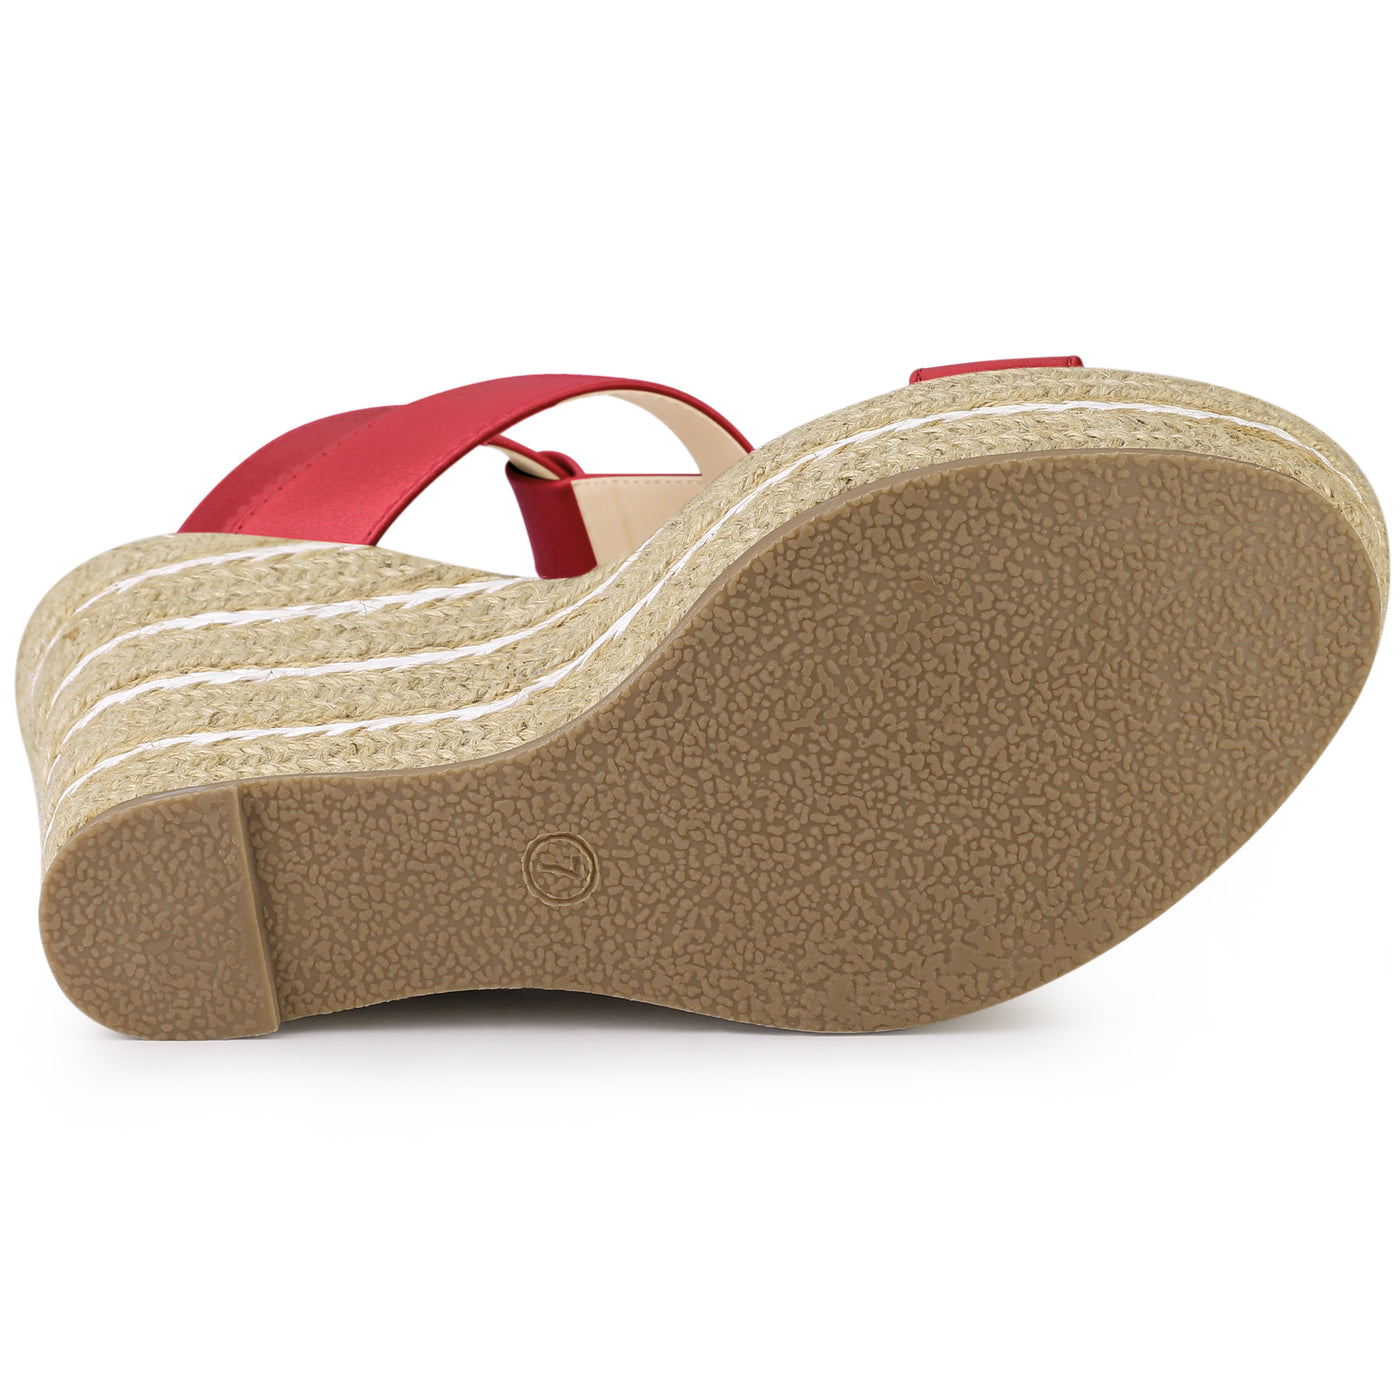 Allegra K Espadrille Strappy Platform Wedges Sandals